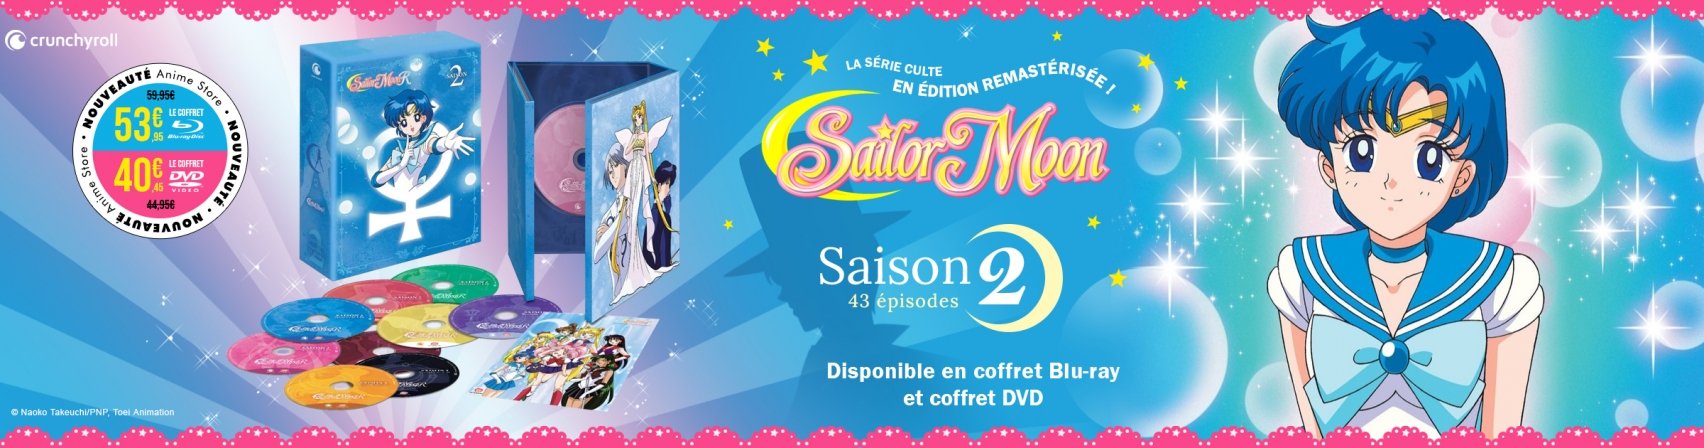 Nouveaut : Sailor Moon Saison 2 en coffret Blu-ray et DVD